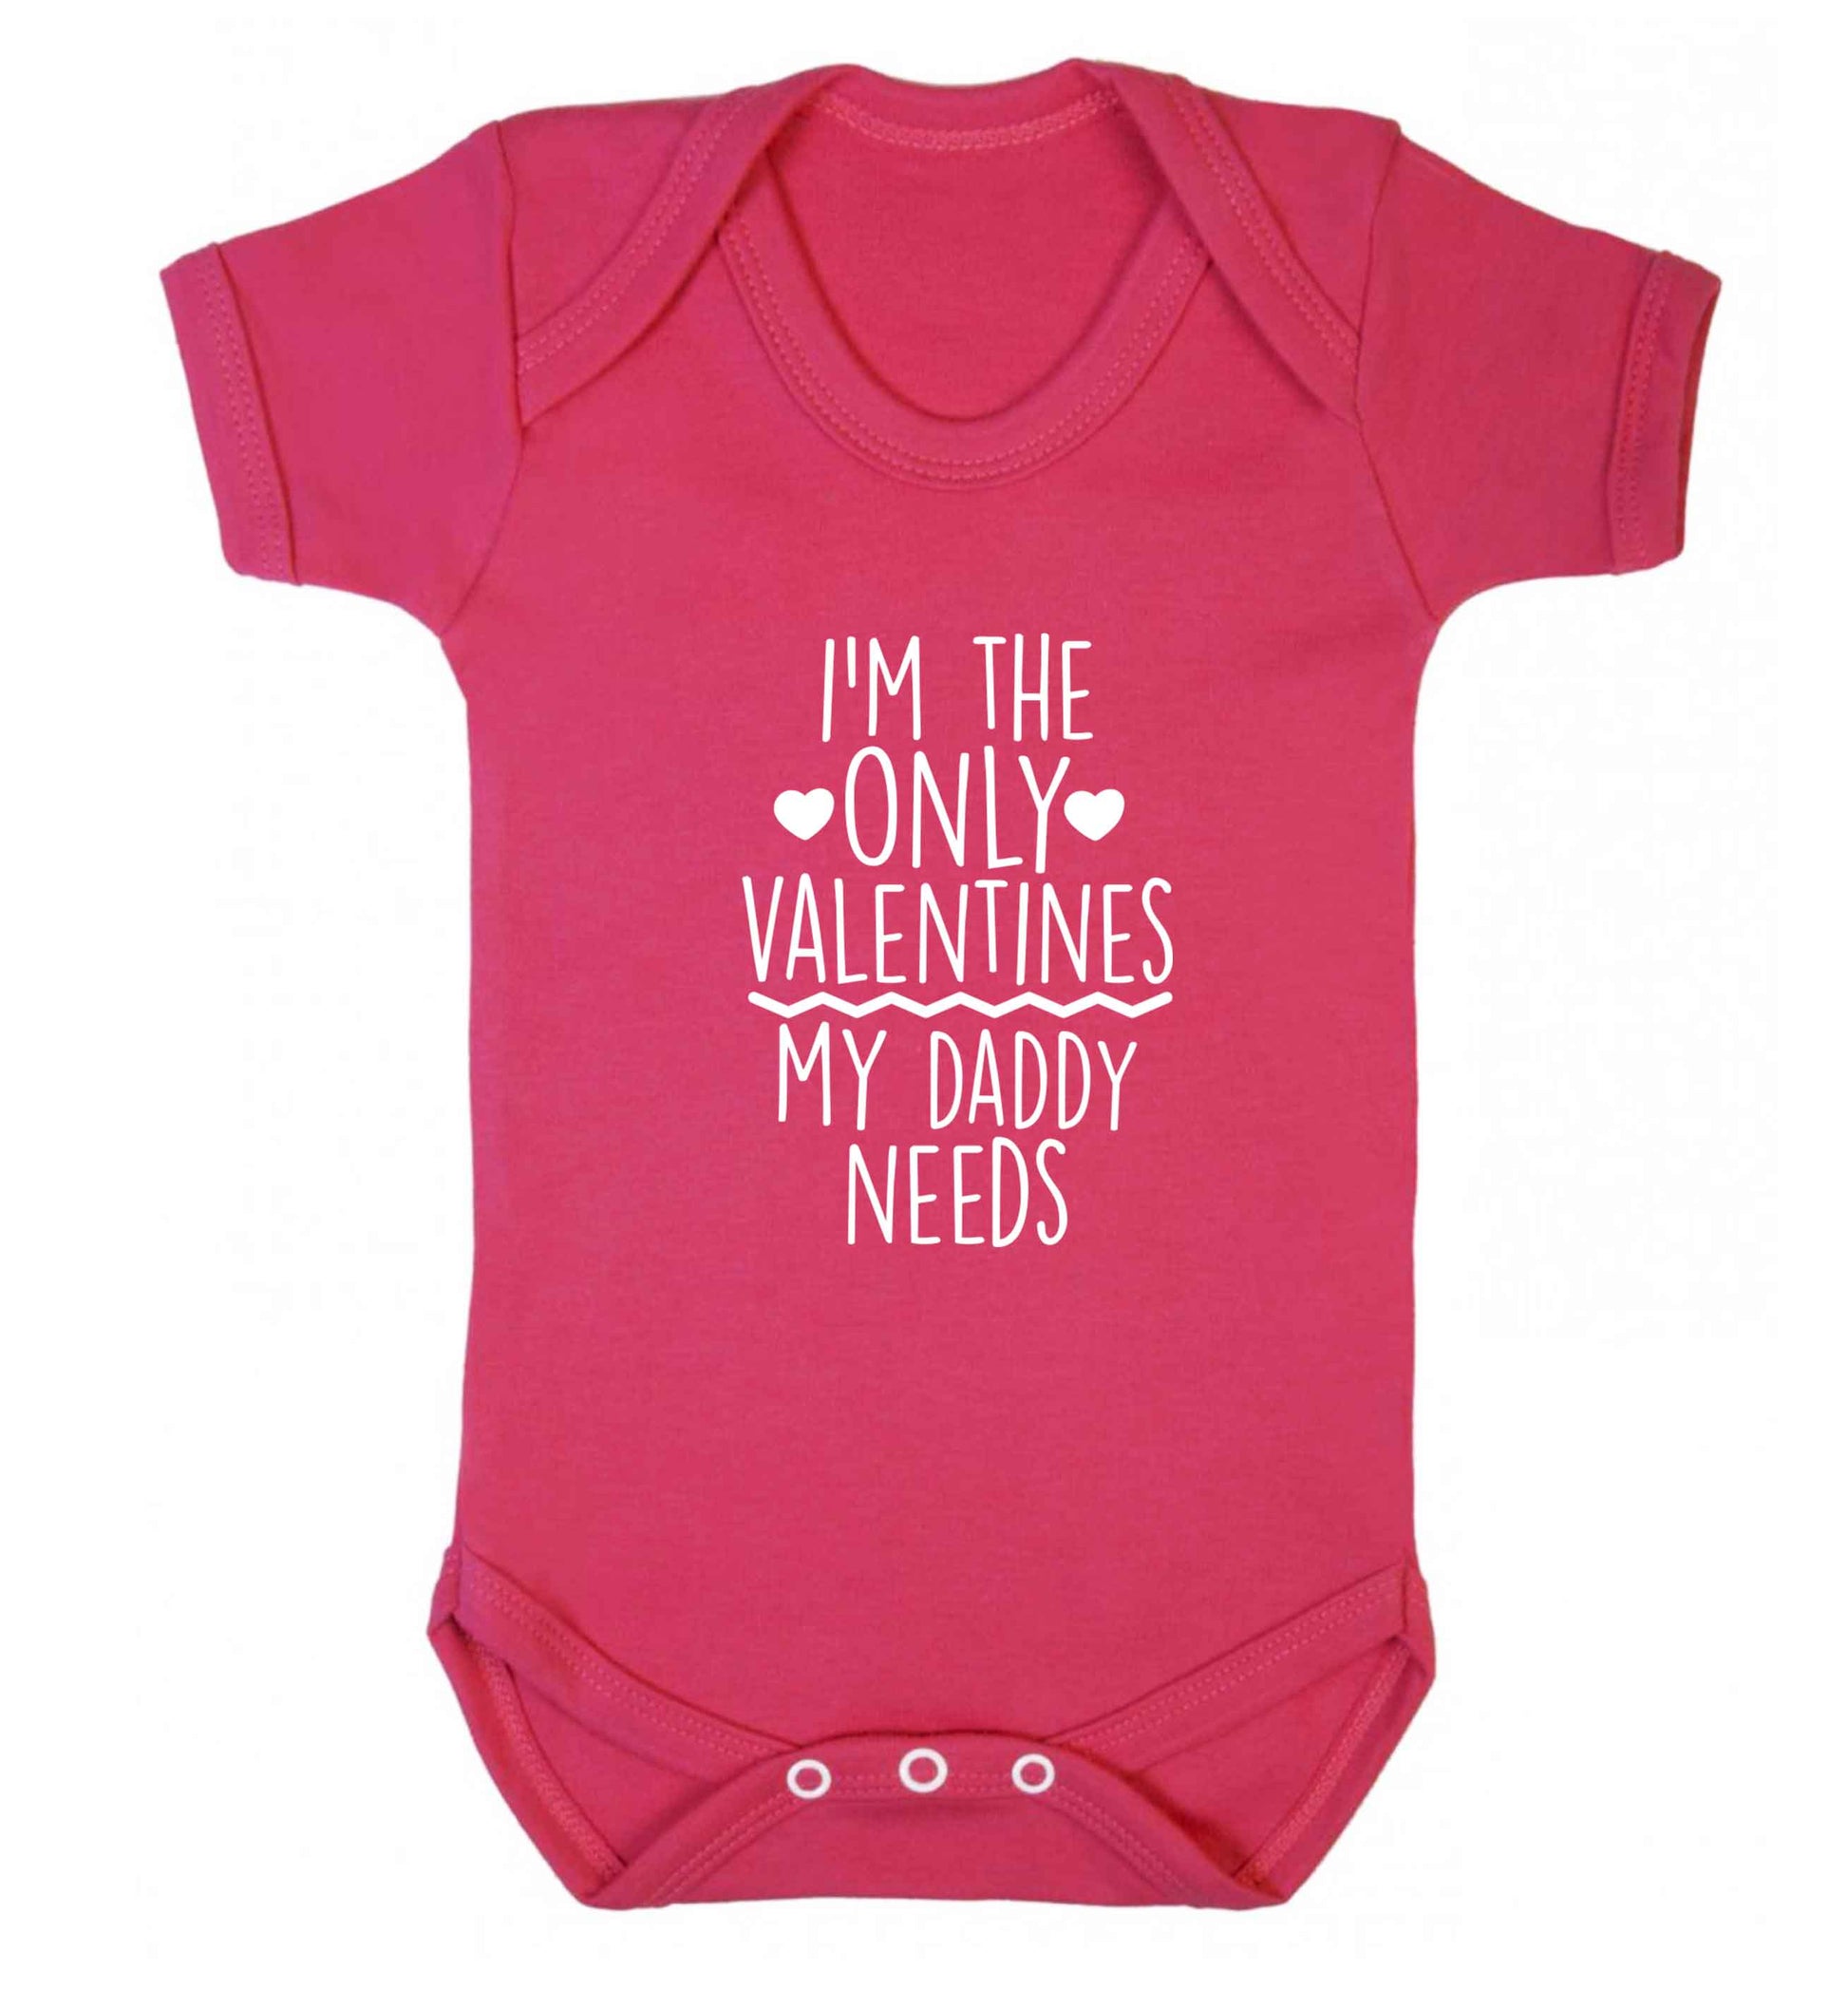 I'm the only valentines my daddy needs baby vest dark pink 18-24 months